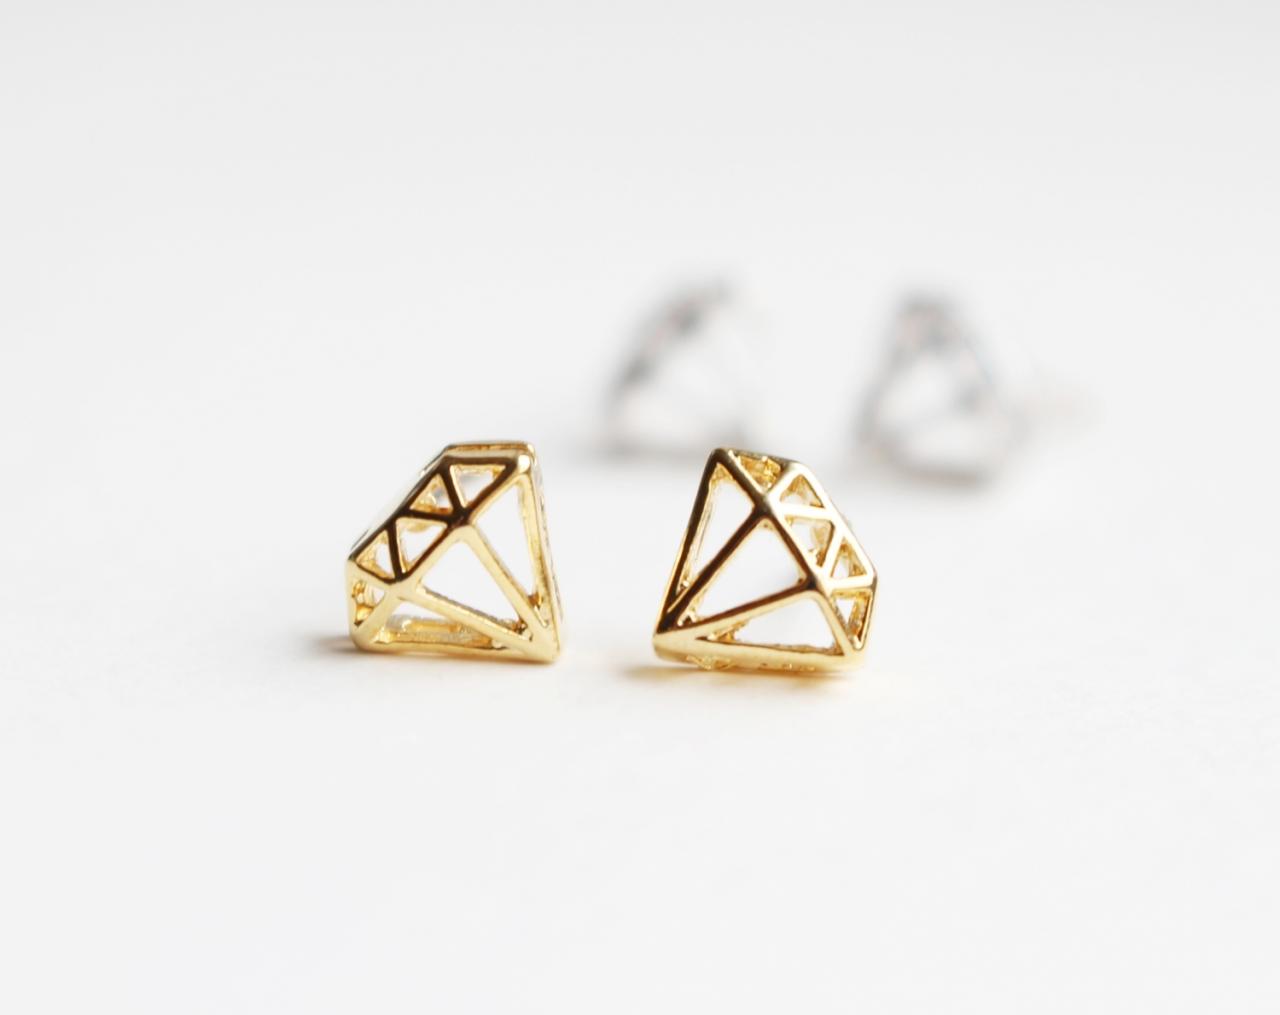 Diamond shape stud earrings, post earrings, sterling silver ear post, Minimal, Simple, Geometric